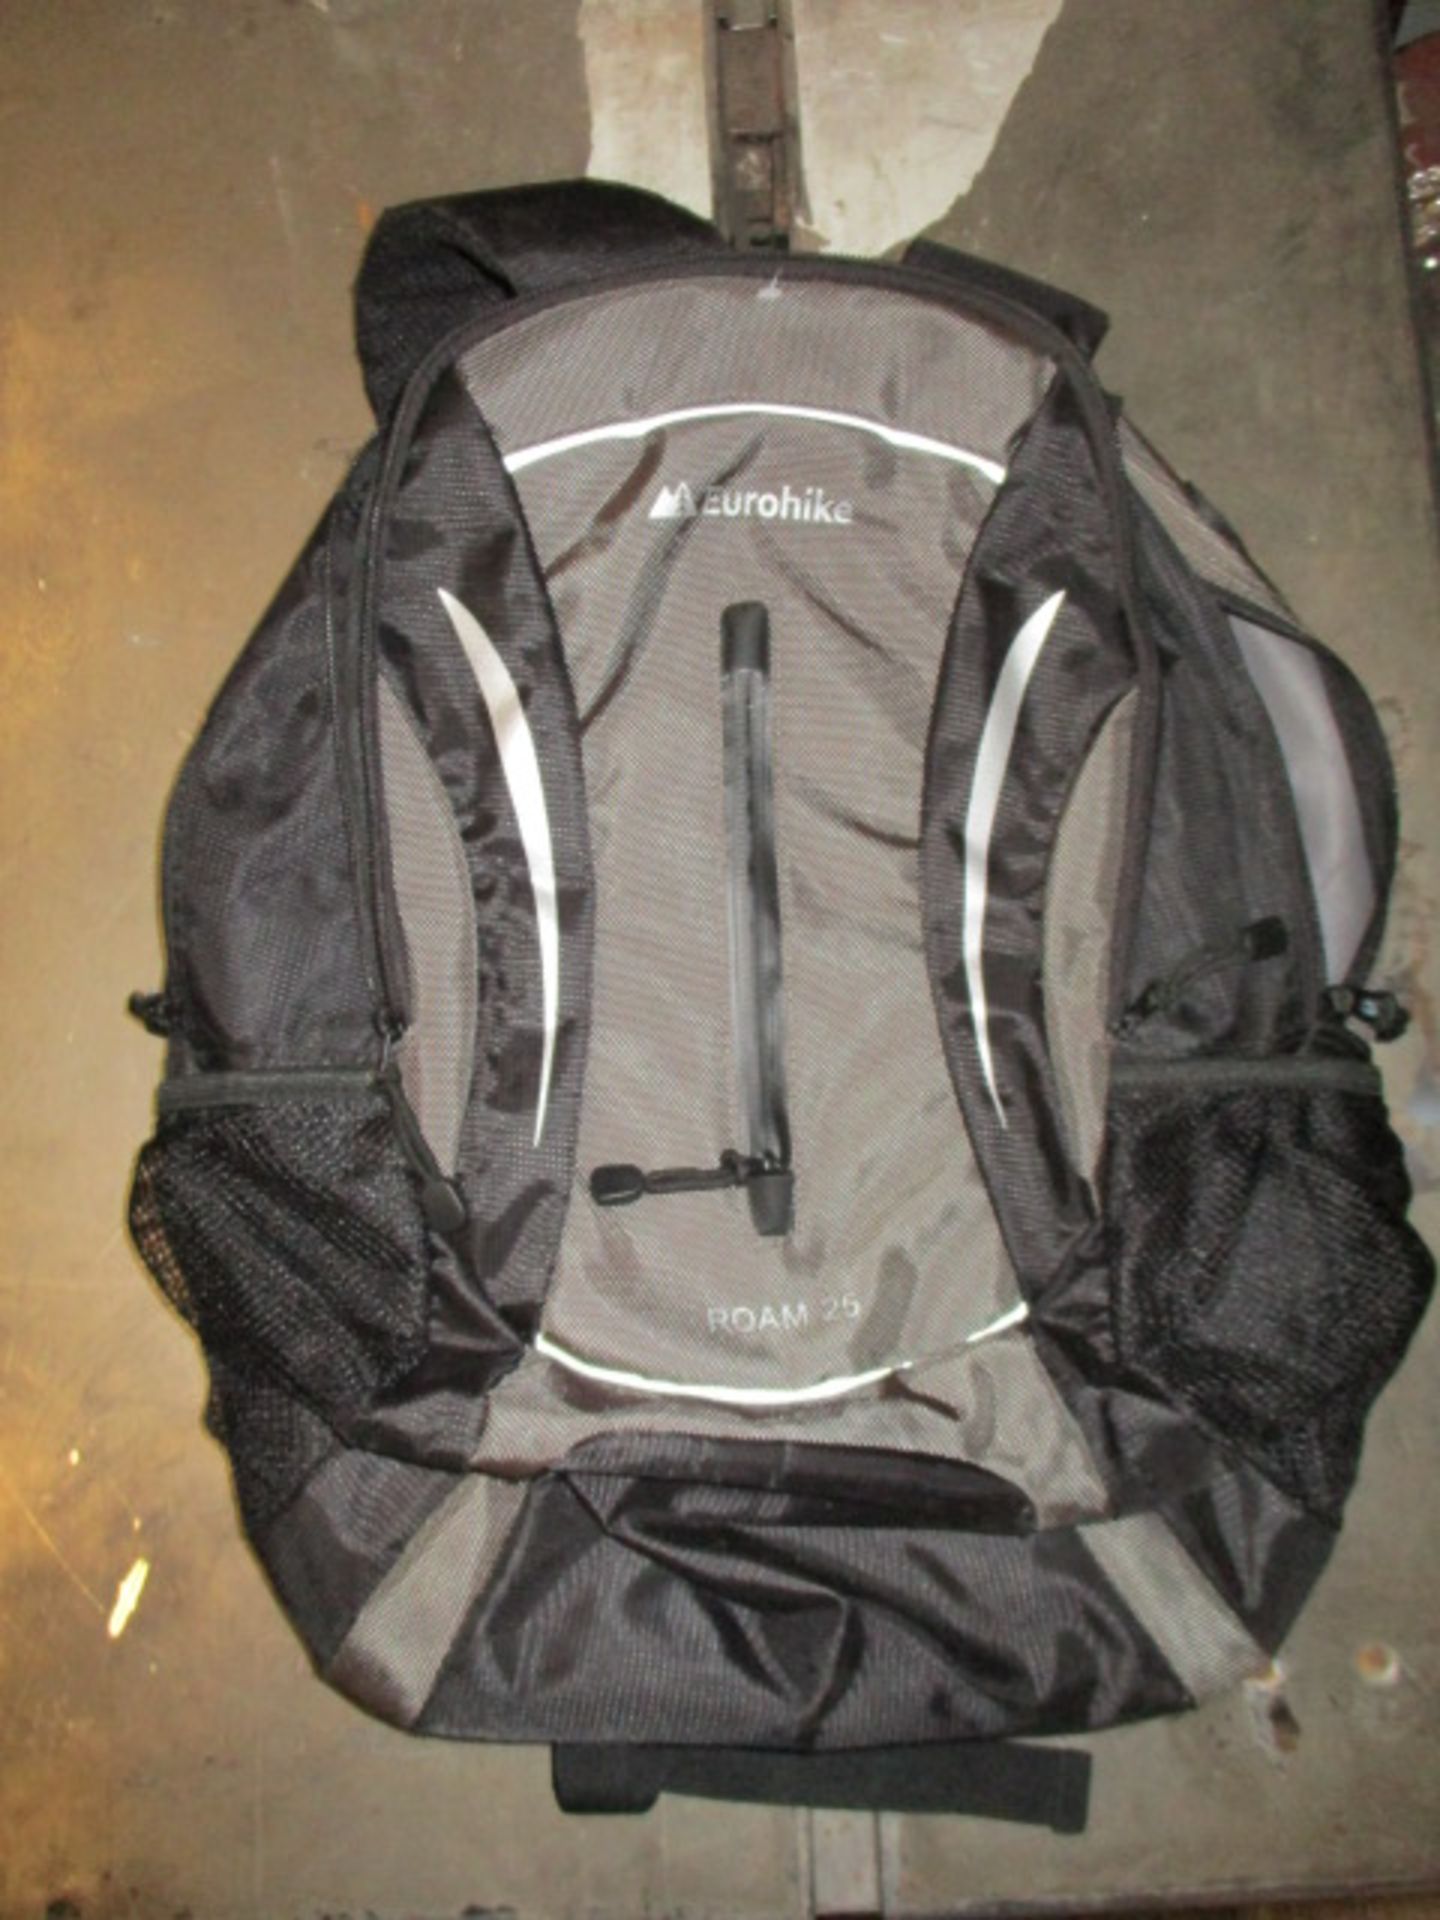 Eurohike Roam 25 Backpack